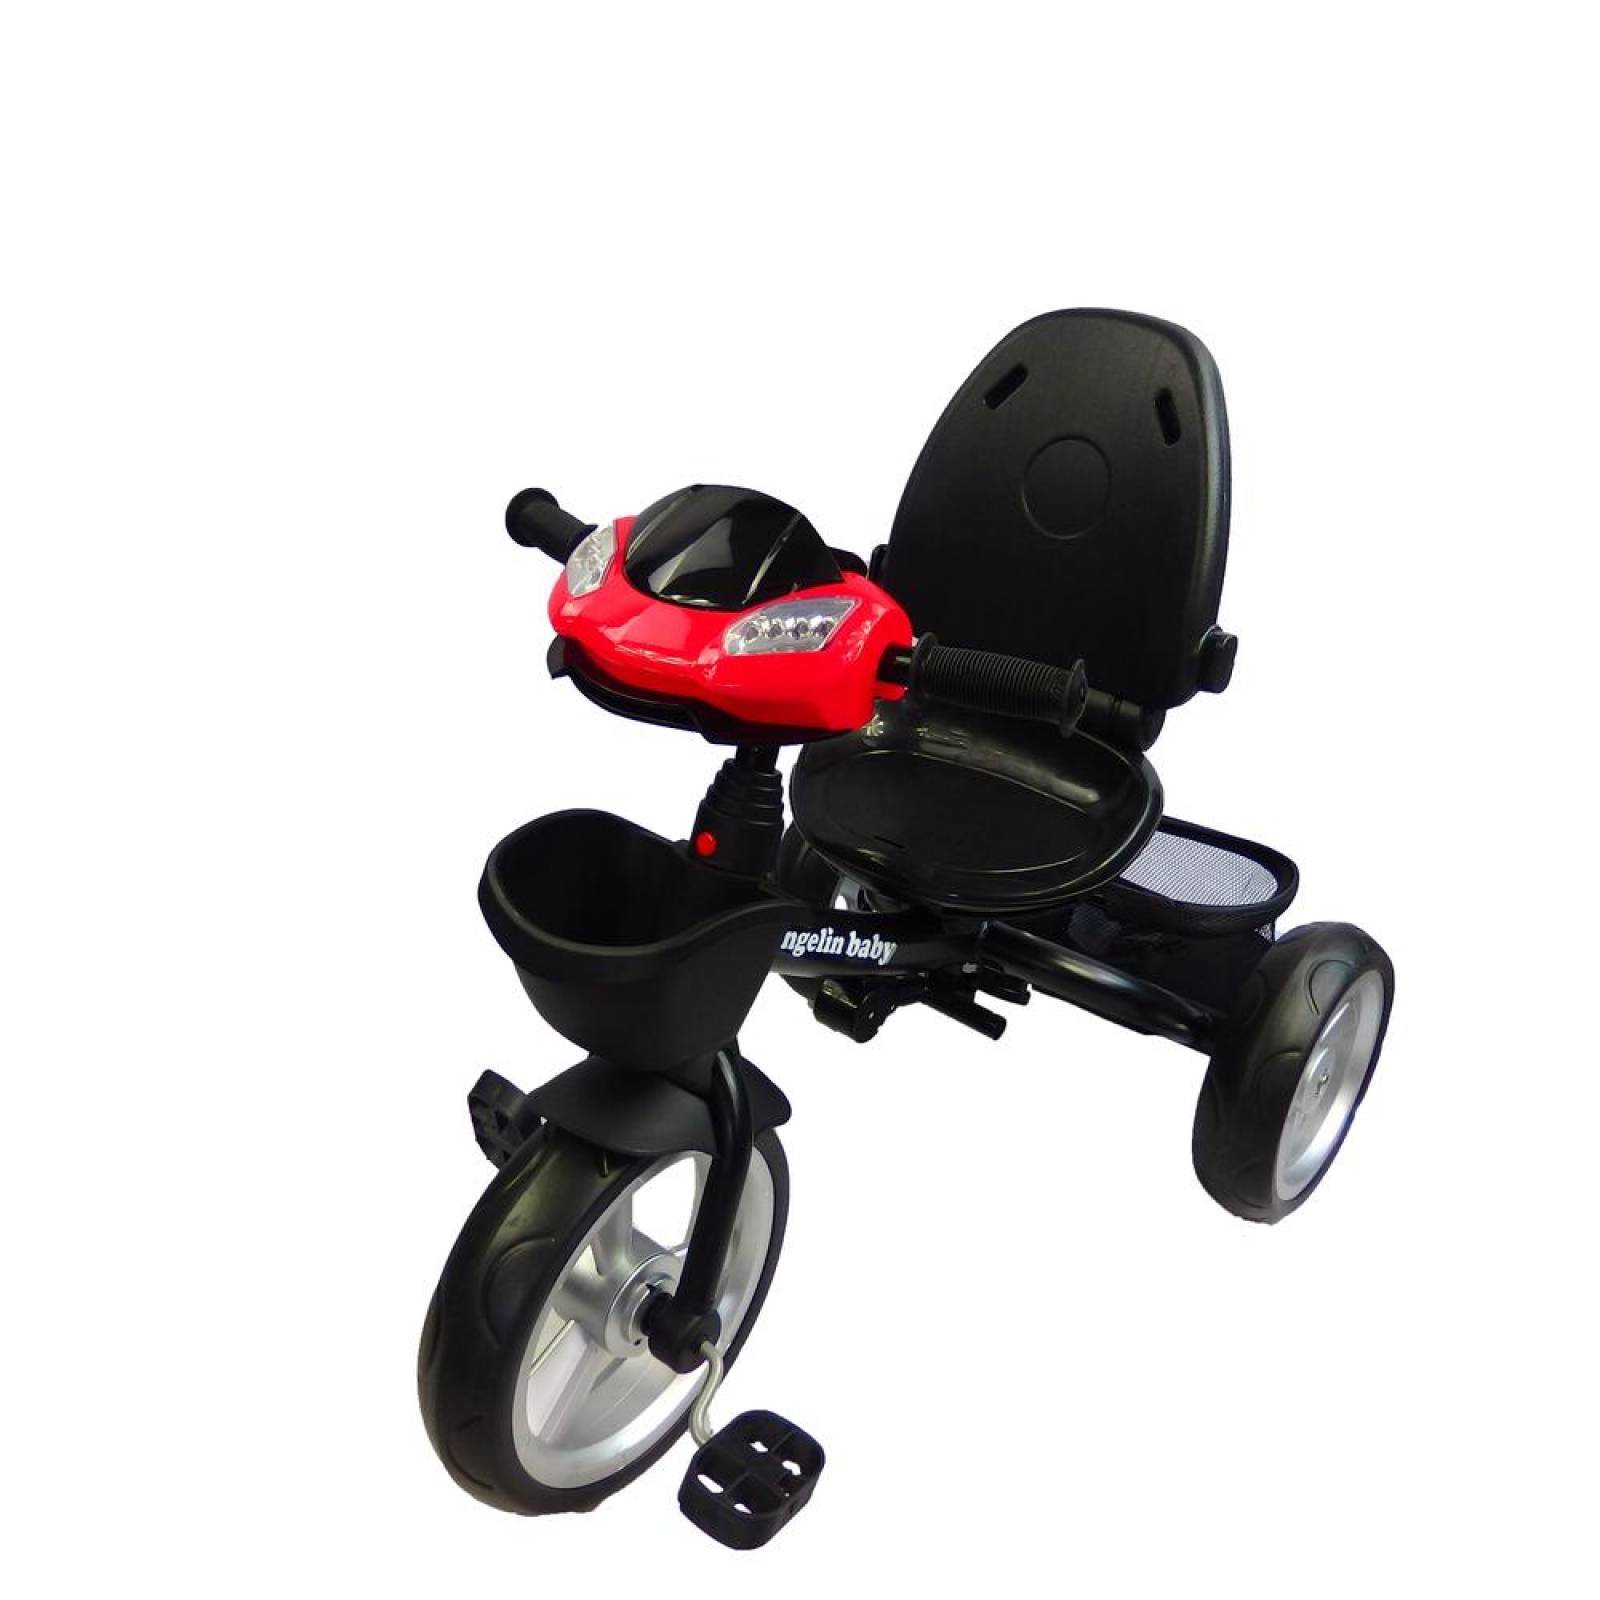 Triciclo para niño y niña con asiento giratorio a 360 Rojo 